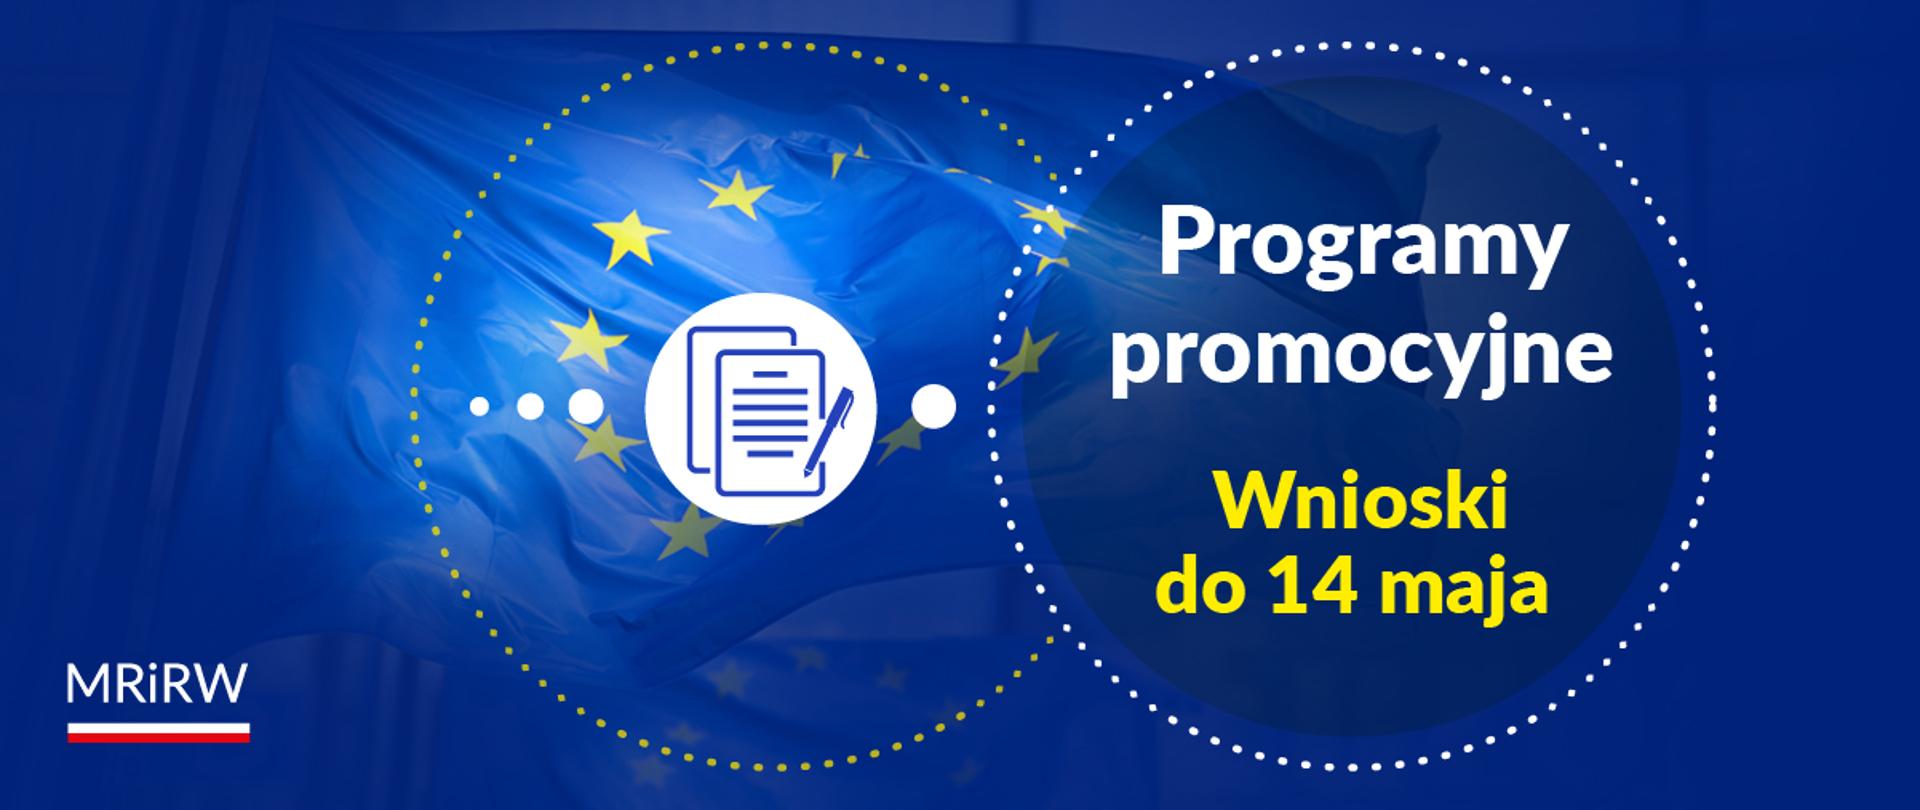 KE - Programy promocyjne – wnioski do 14 maja